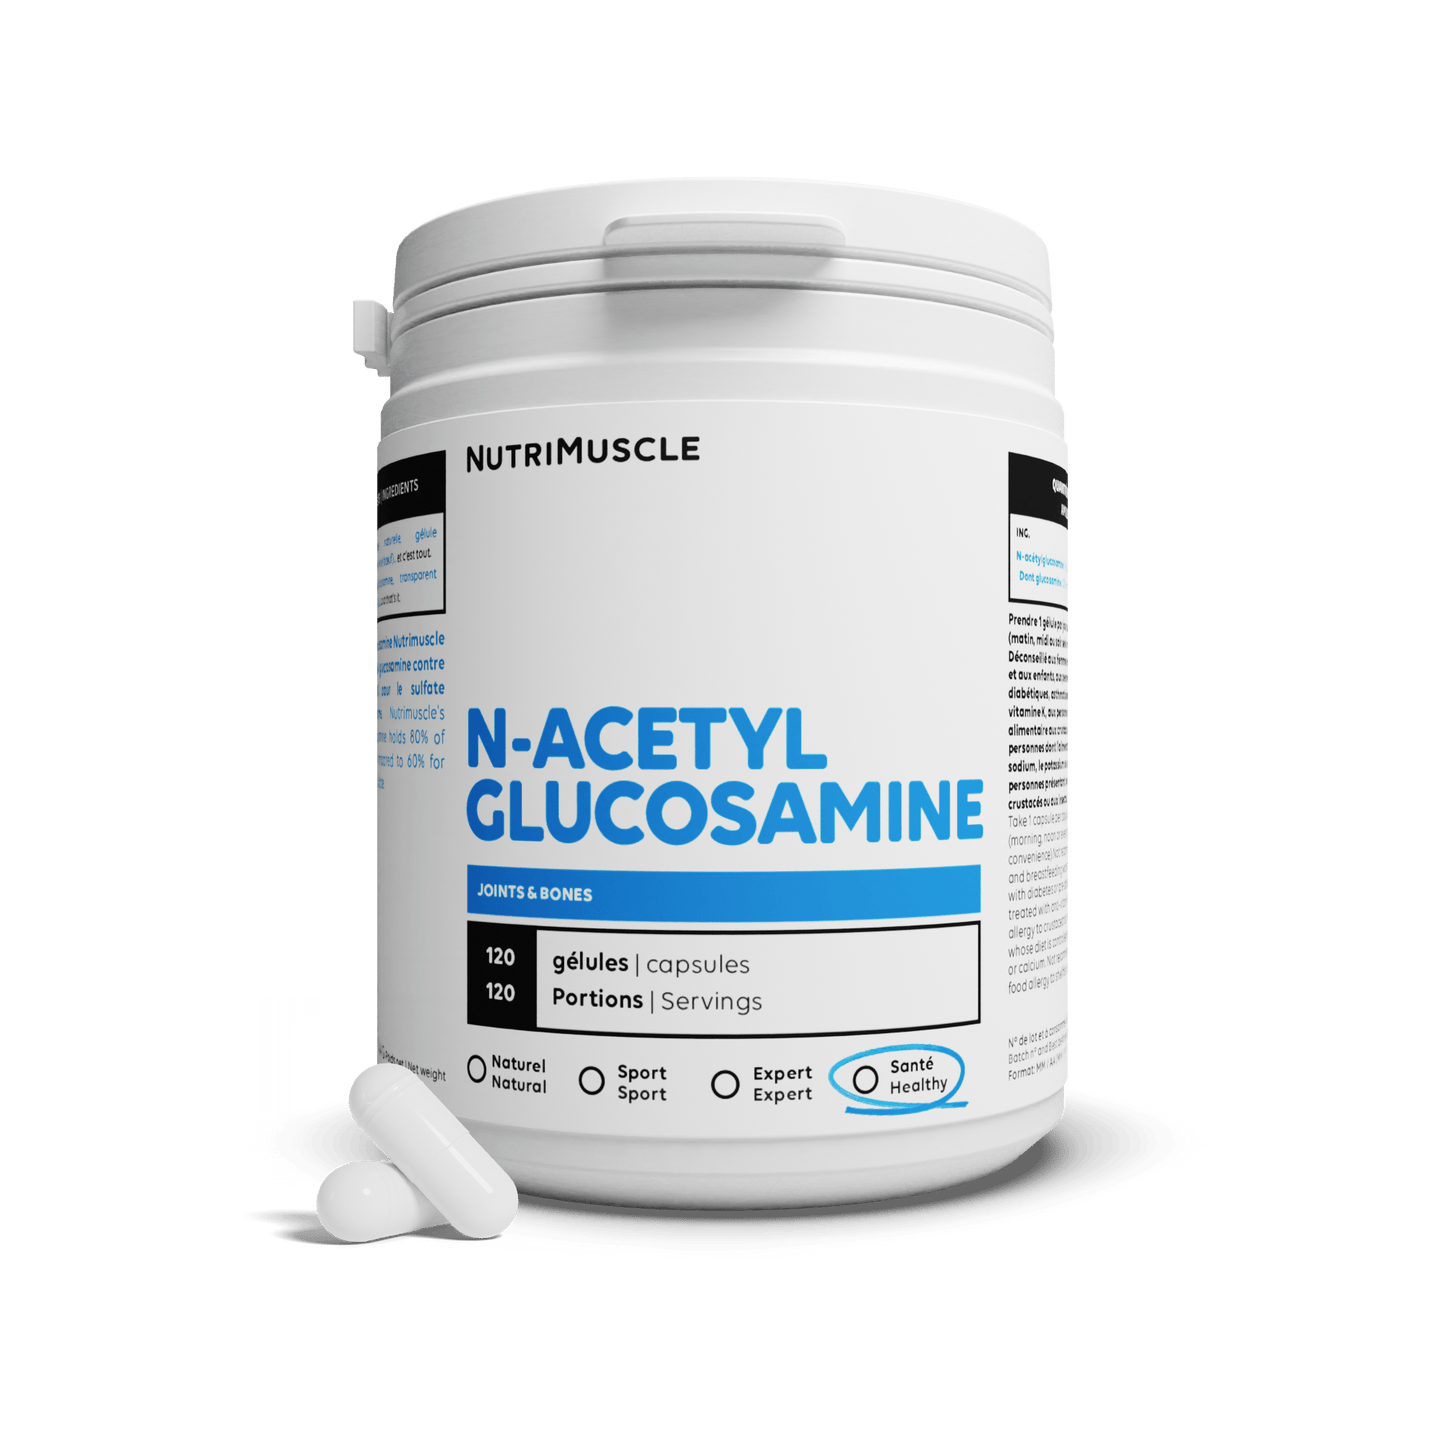 Nutrimuscle Nutriments 30 gélules Glucosamine (N-Acetylglucosamine) en gélules